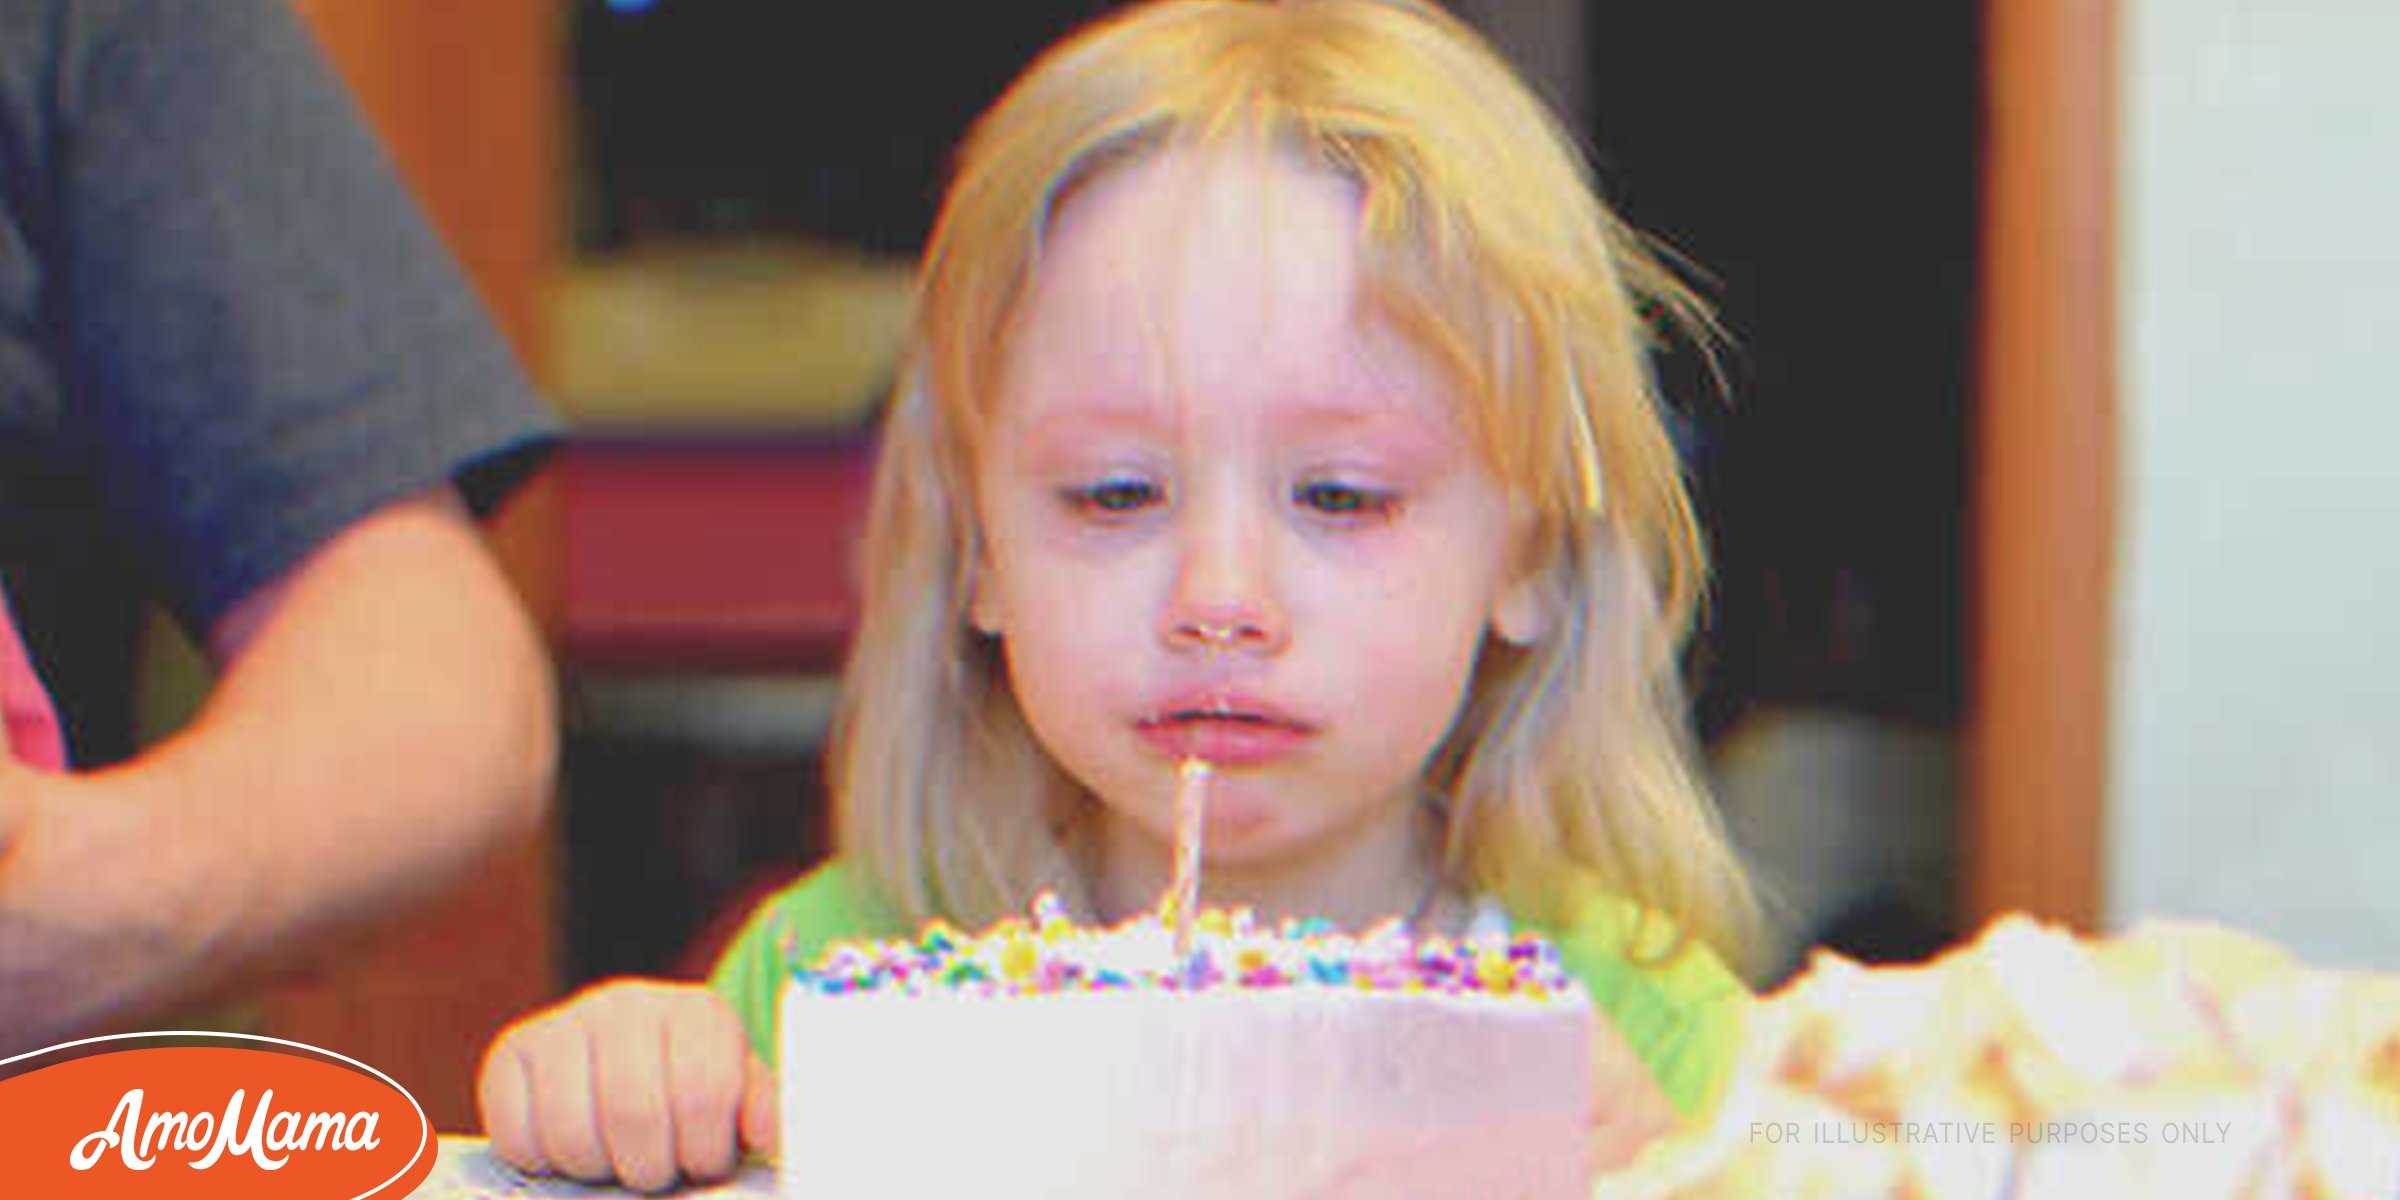 Une fille adoptée pleure en voyant son premier gâteau d’anniversaire, et reçoit 40 000 dollars de son vrai père le jour suivant – Histoire du jour